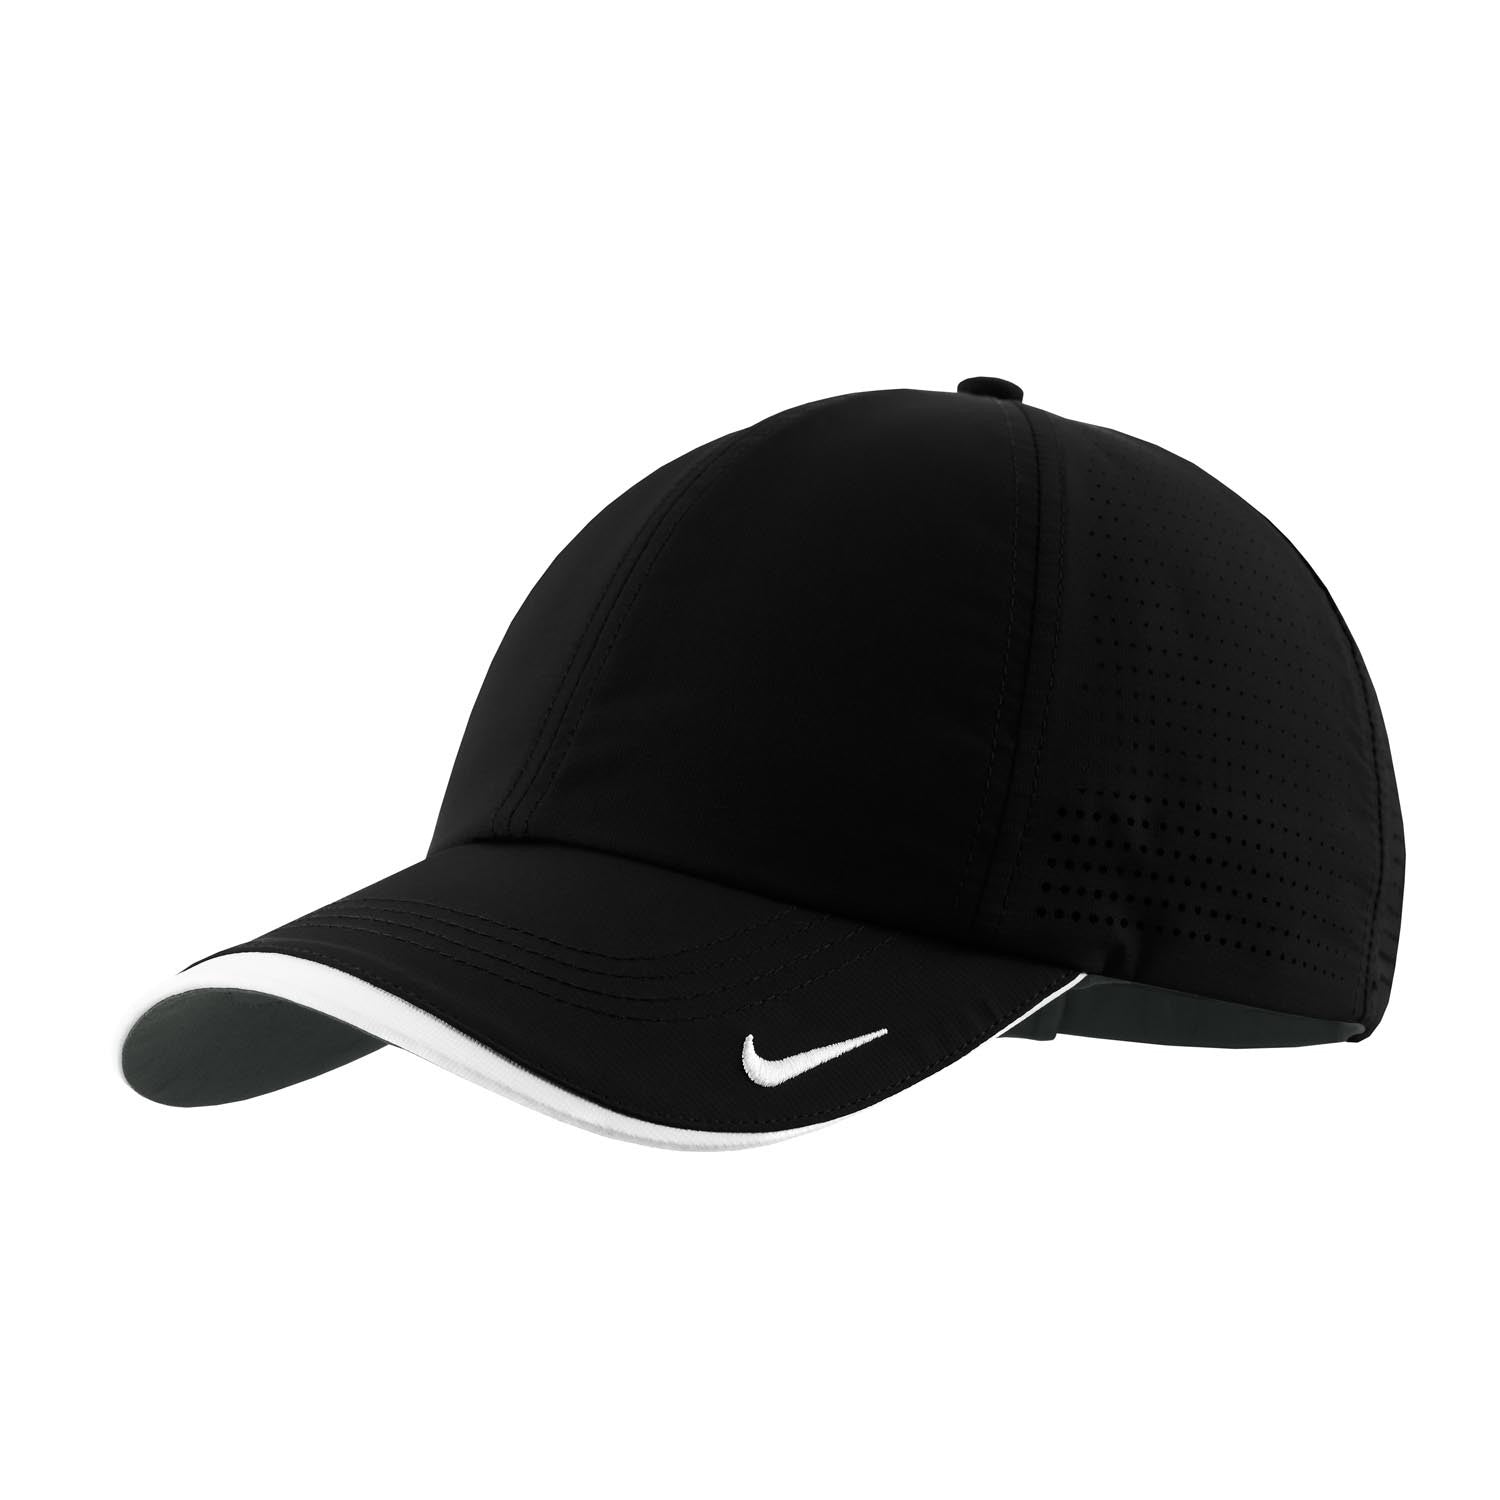 Nike Golf Black Swoosh Perforated Cap